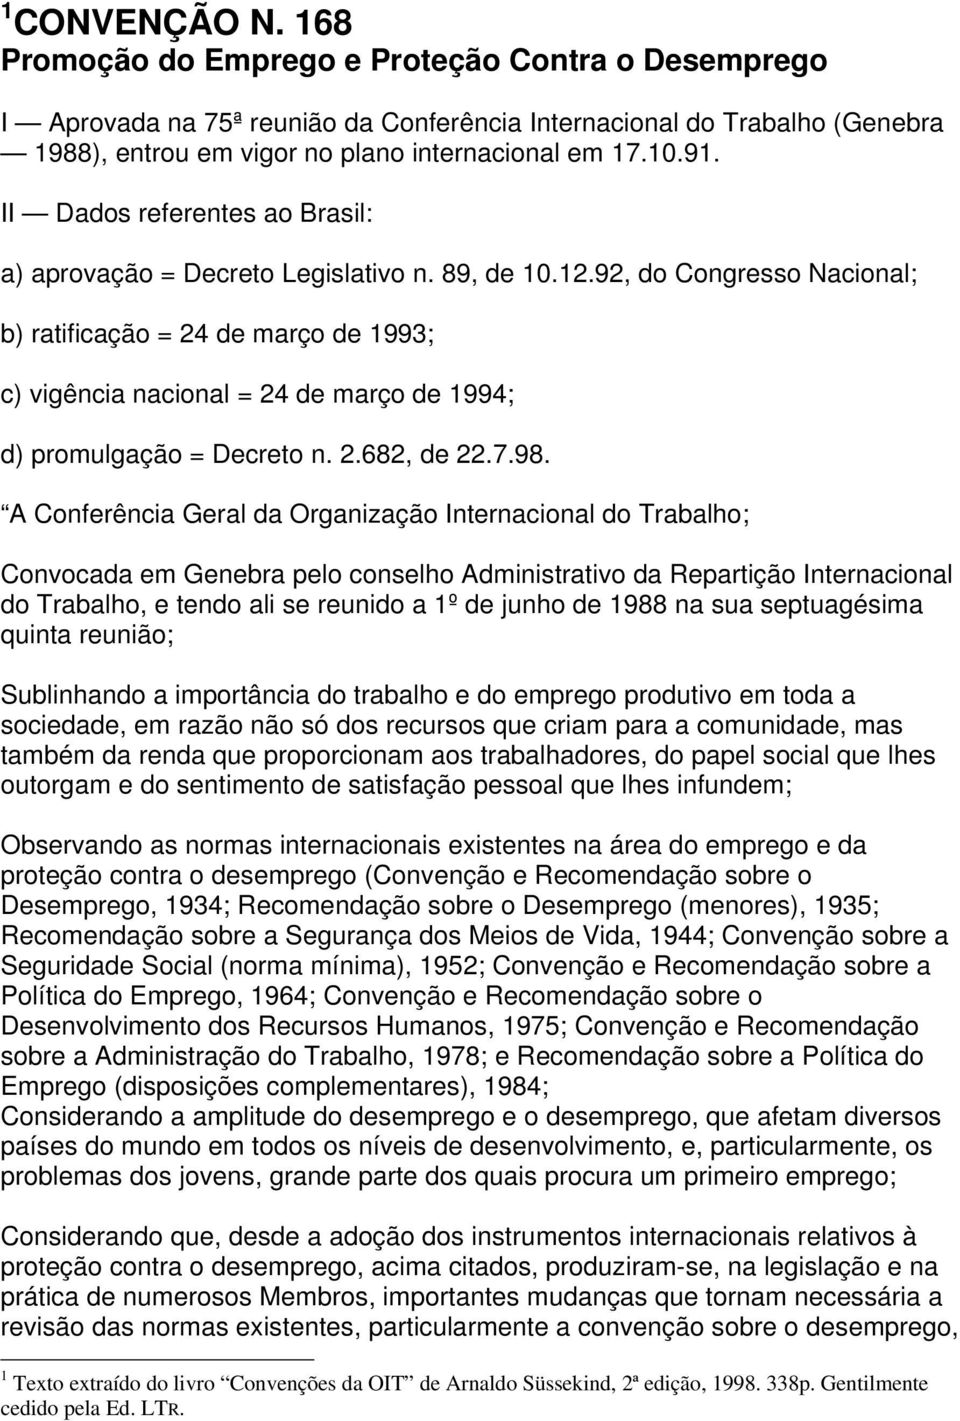 92, do Congresso Nacional; b) ratificação = 24 de março de 1993; c) vigência nacional = 24 de março de 1994; d) promulgação = Decreto n. 2.682, de 22.7.98.